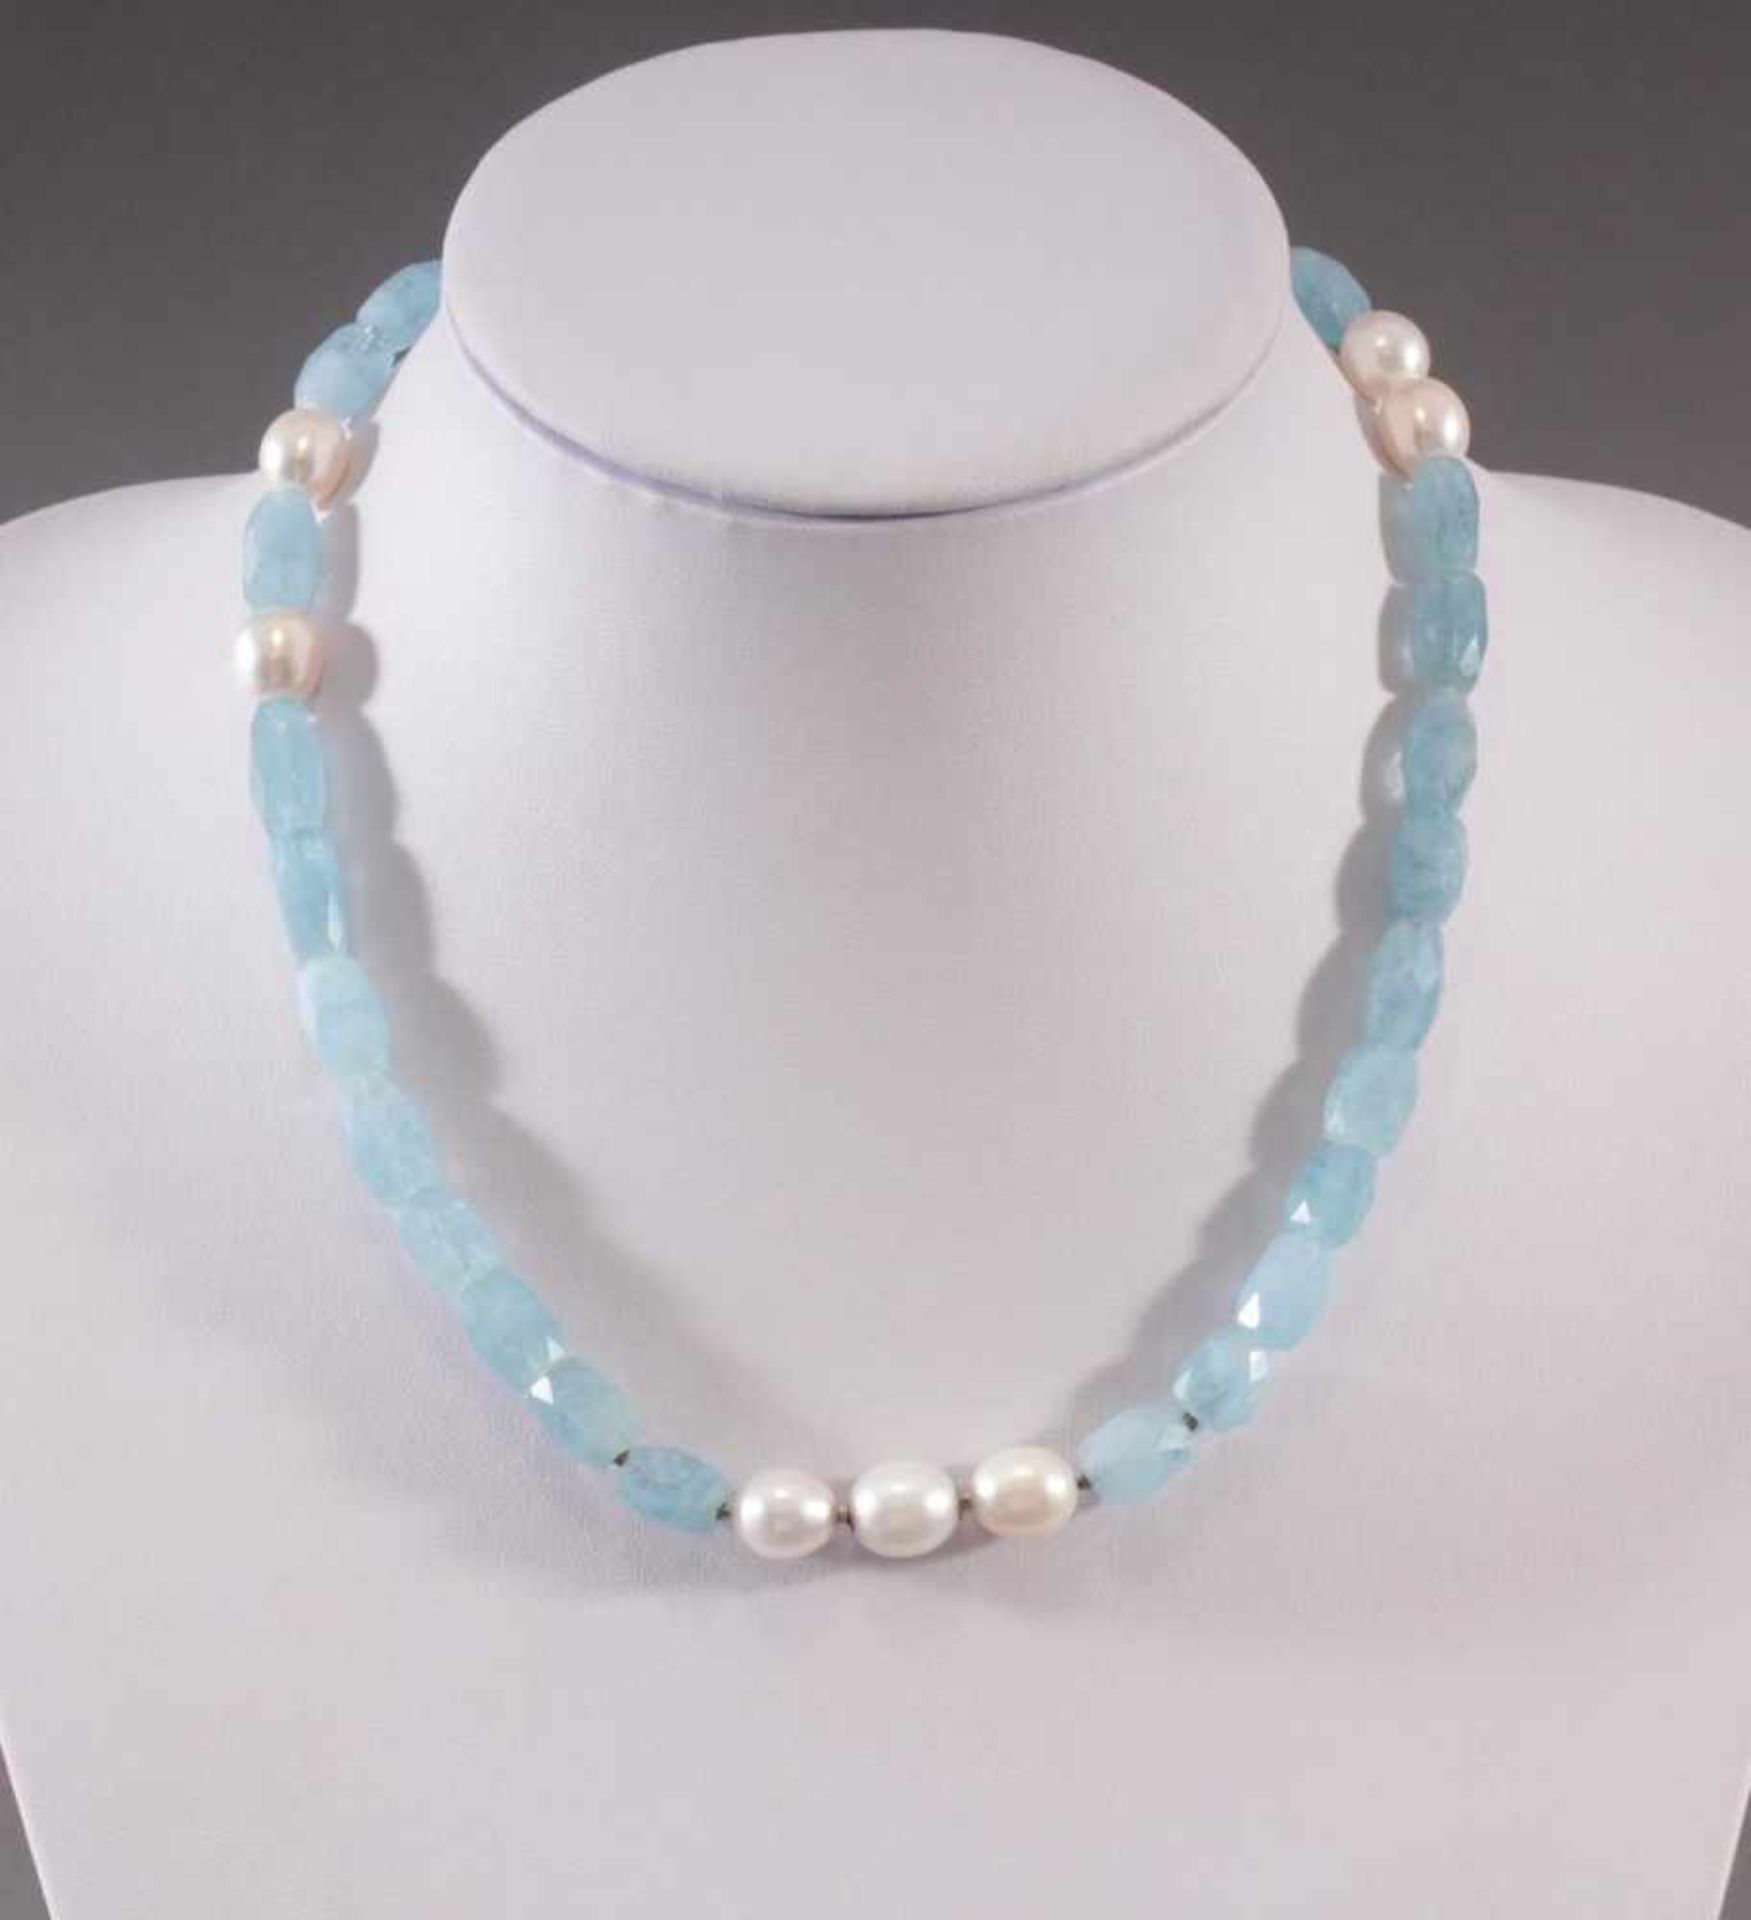 Halskette aus Aquamarinen und PerlenAus 30 facettierten Aquamarinen (L-1 und 1,5 cm) und 7 Perlen (